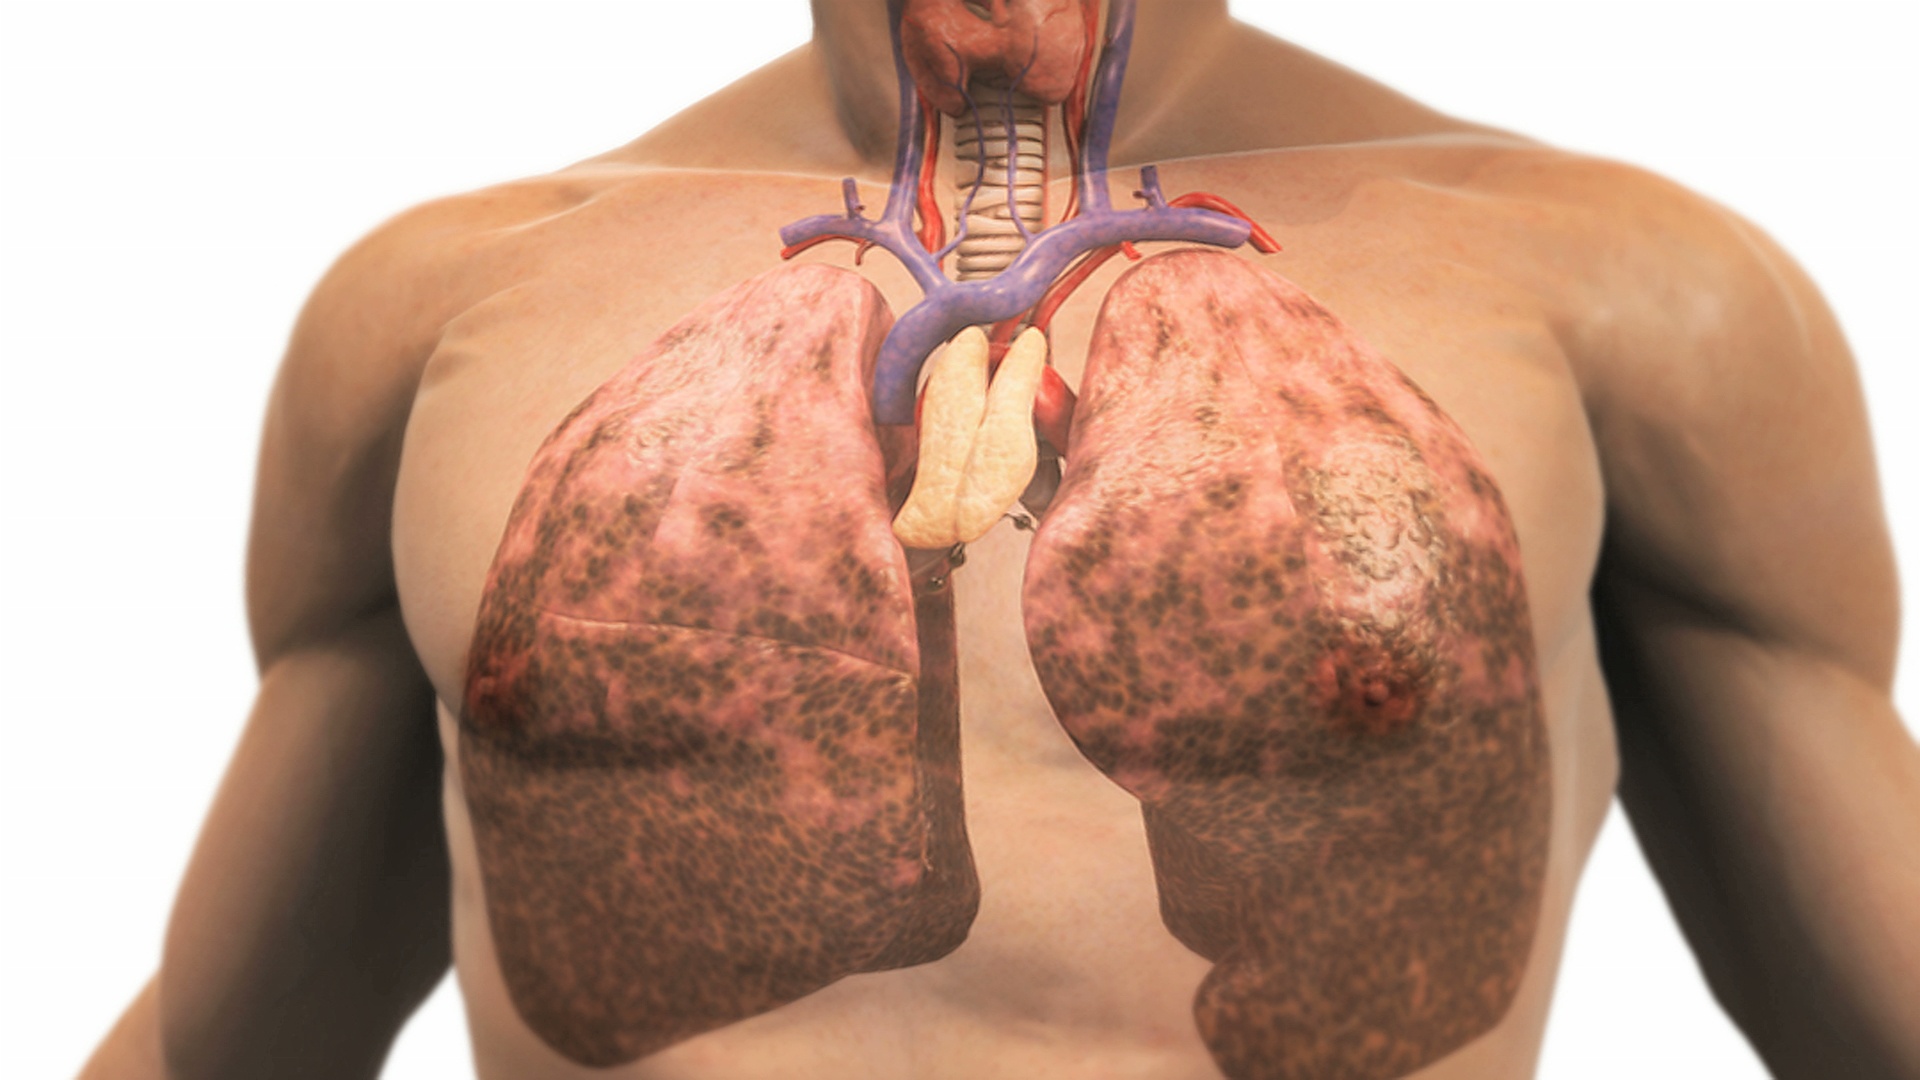 描绘因吸烟而患病的肺部的动画。镜头拉近，尸体逐渐消失，露出肺部。视频素材